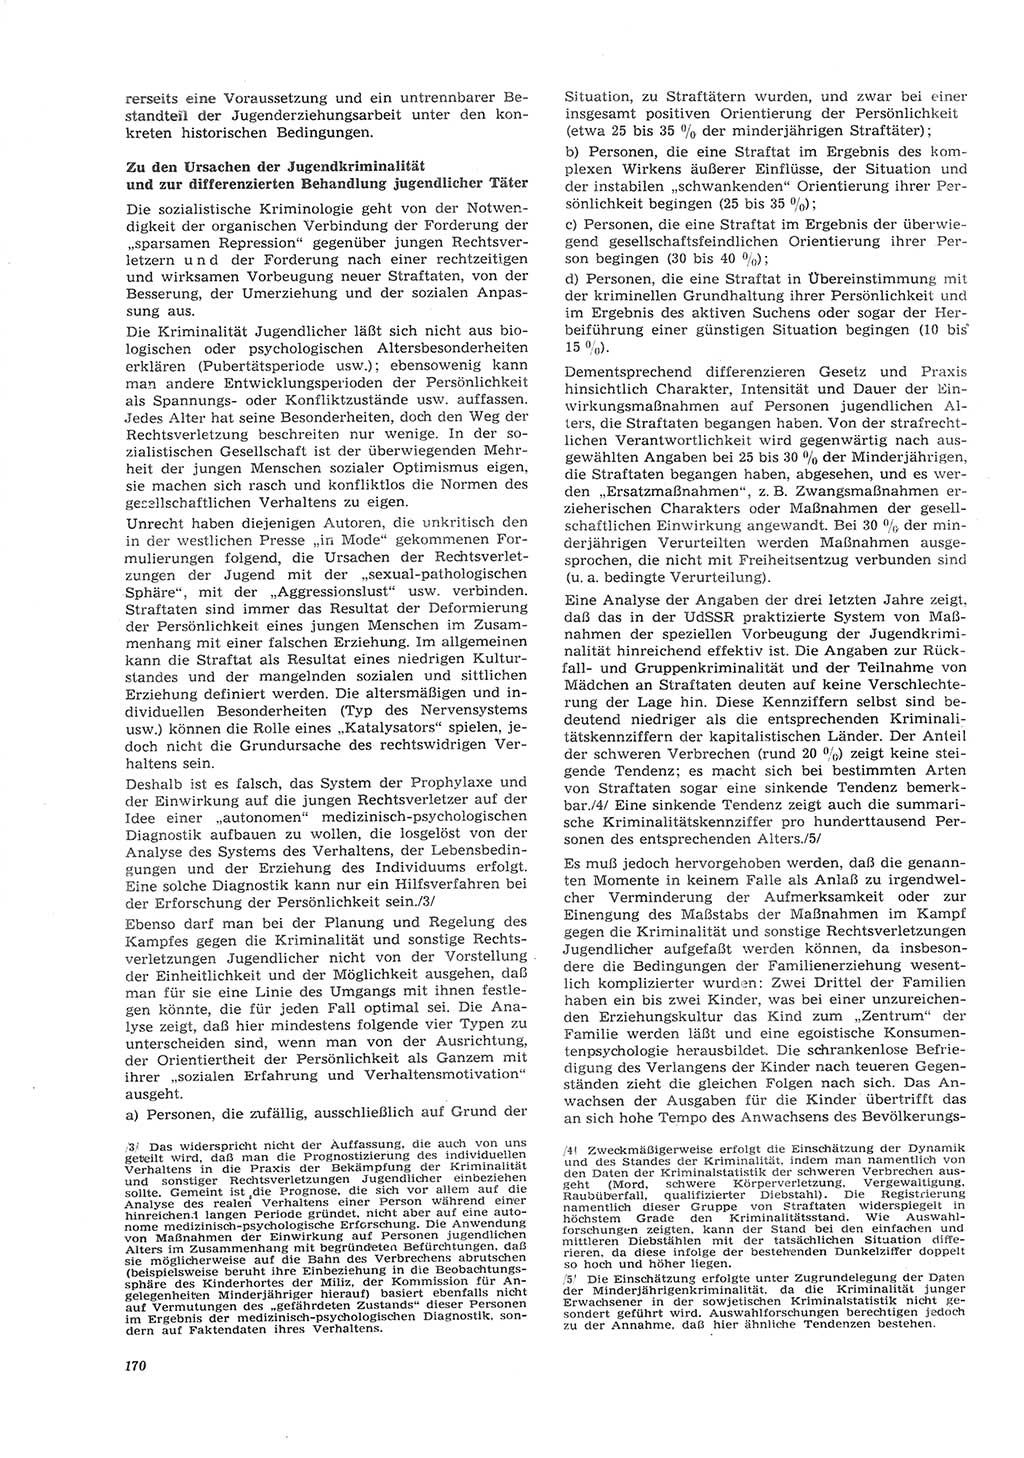 Neue Justiz (NJ), Zeitschrift für Recht und Rechtswissenschaft [Deutsche Demokratische Republik (DDR)], 26. Jahrgang 1972, Seite 170 (NJ DDR 1972, S. 170)